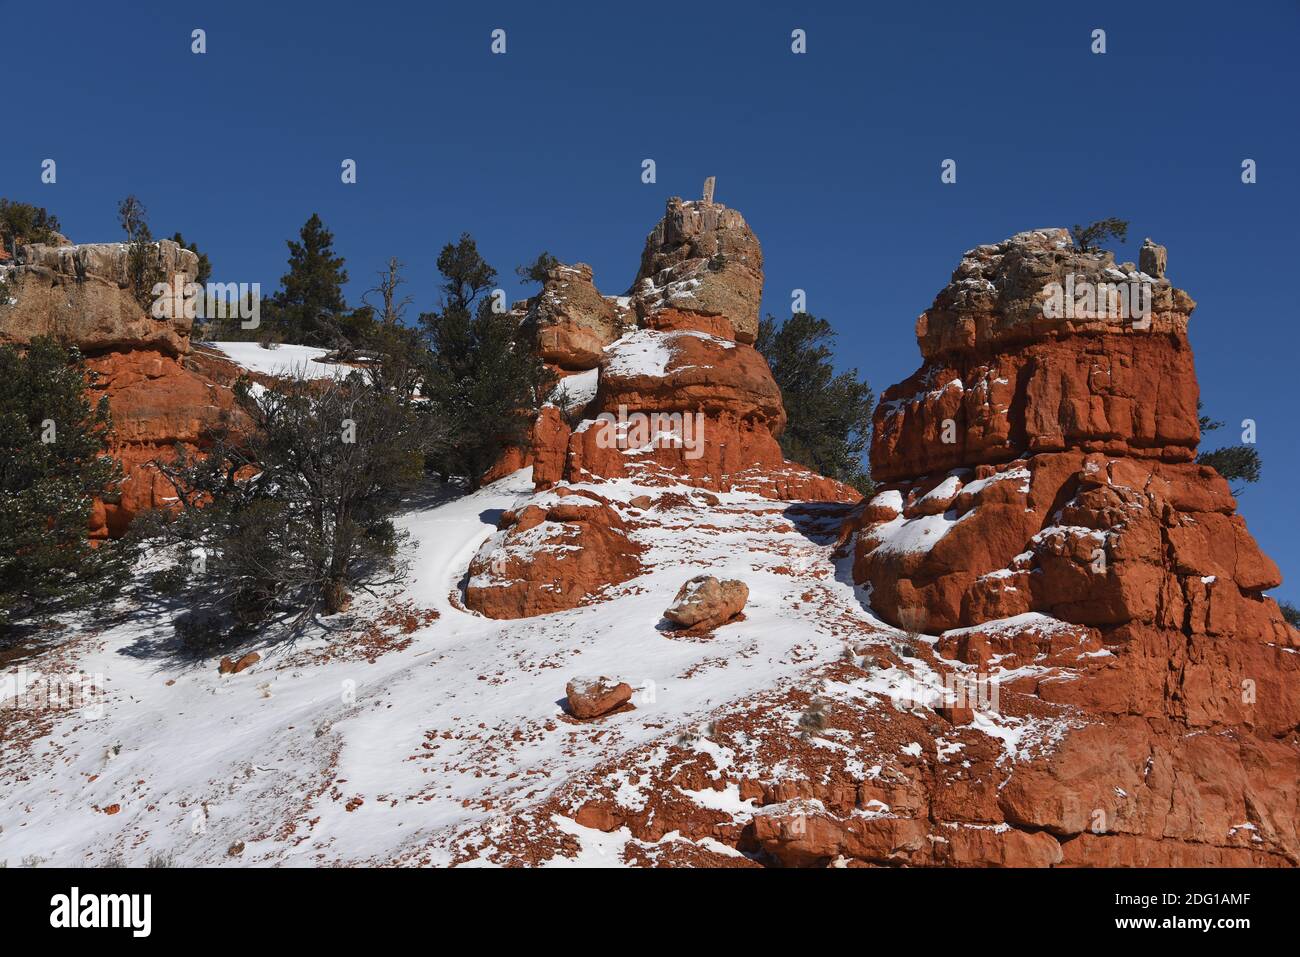 Una imagen en formato de cuadro completo de hermoso colorido de las formaciones rocosas de rohoudo rojo y coníferas verdes de Red Rock Canyon, Utah, cubiertas de nieve. Foto de stock